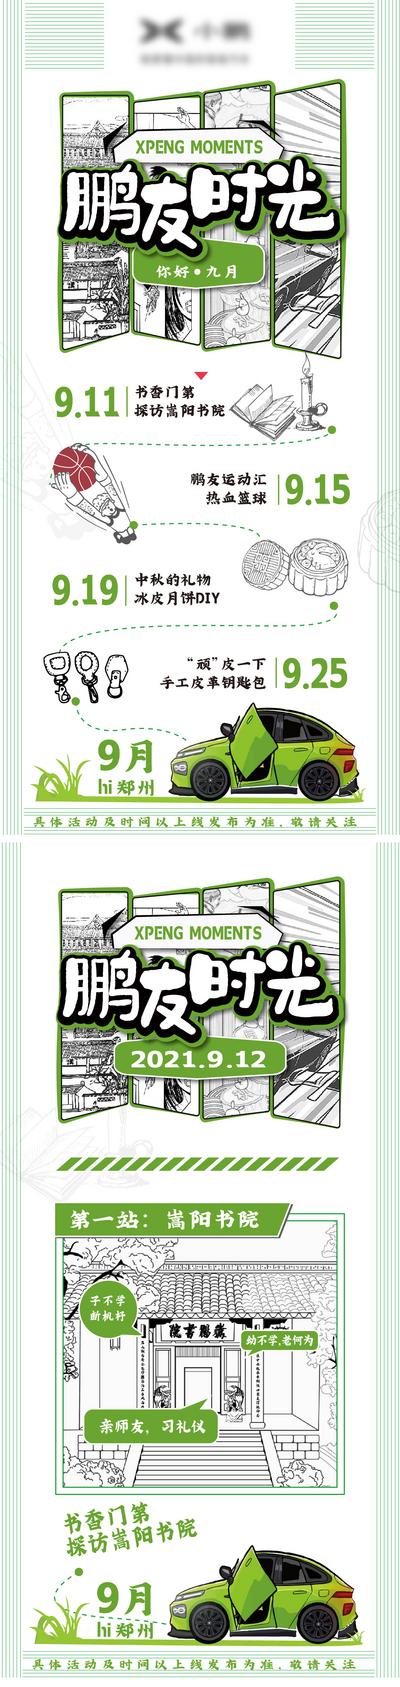 【南门网】海报 长图 旅游 攻略 自驾 插画 汽车 行程表